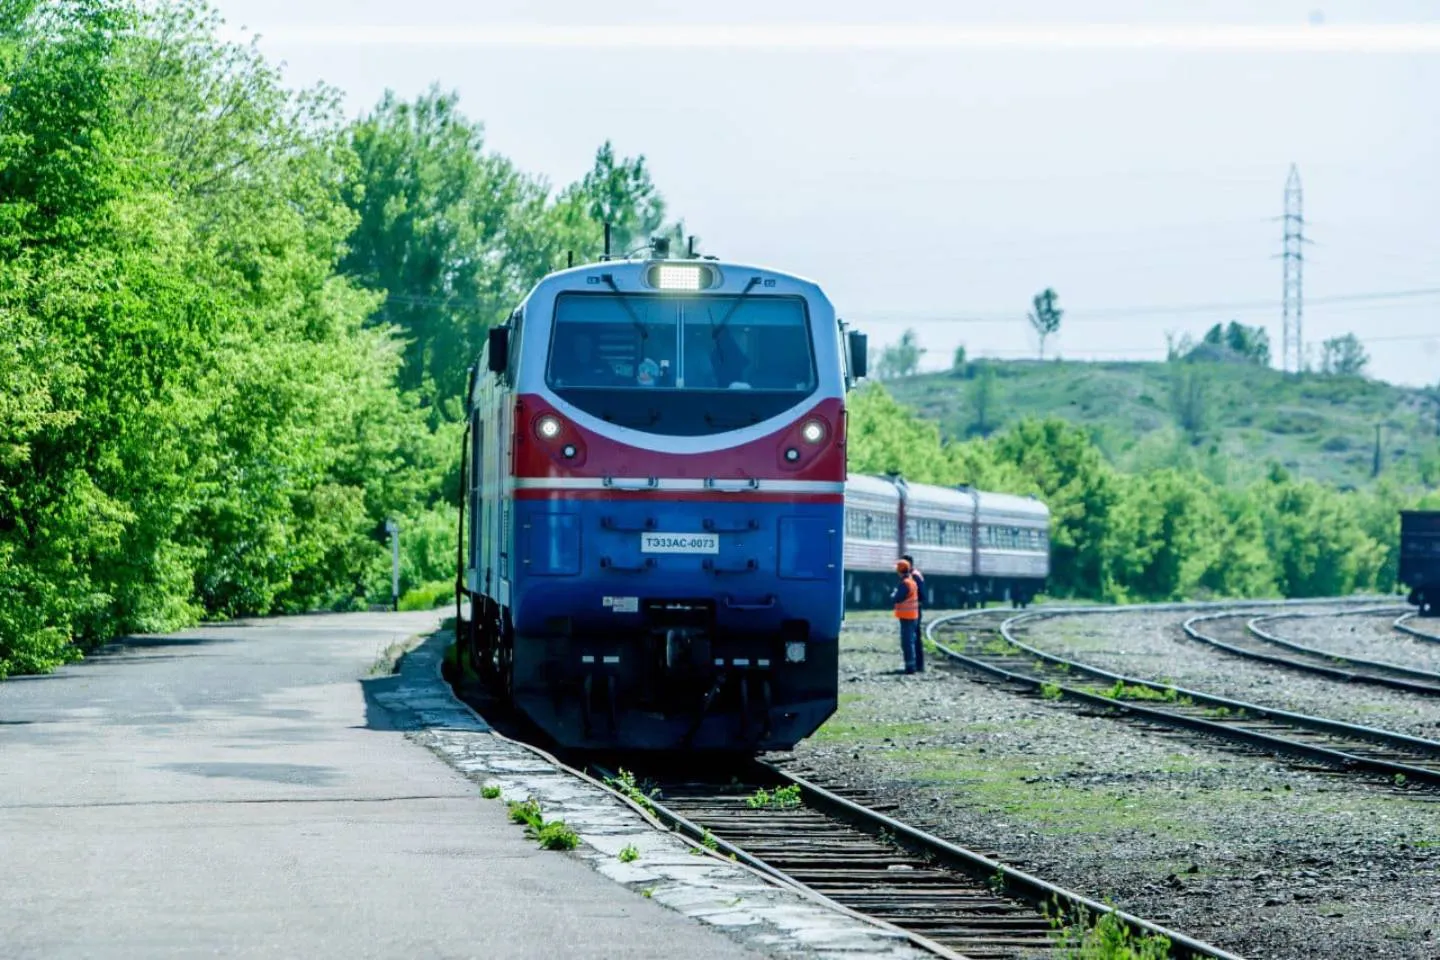 Новости Казахстана / Общество в Казахстане / Дефицит билетов: почему казахстанцы вынуждены путешествовать на поездах втридорога?